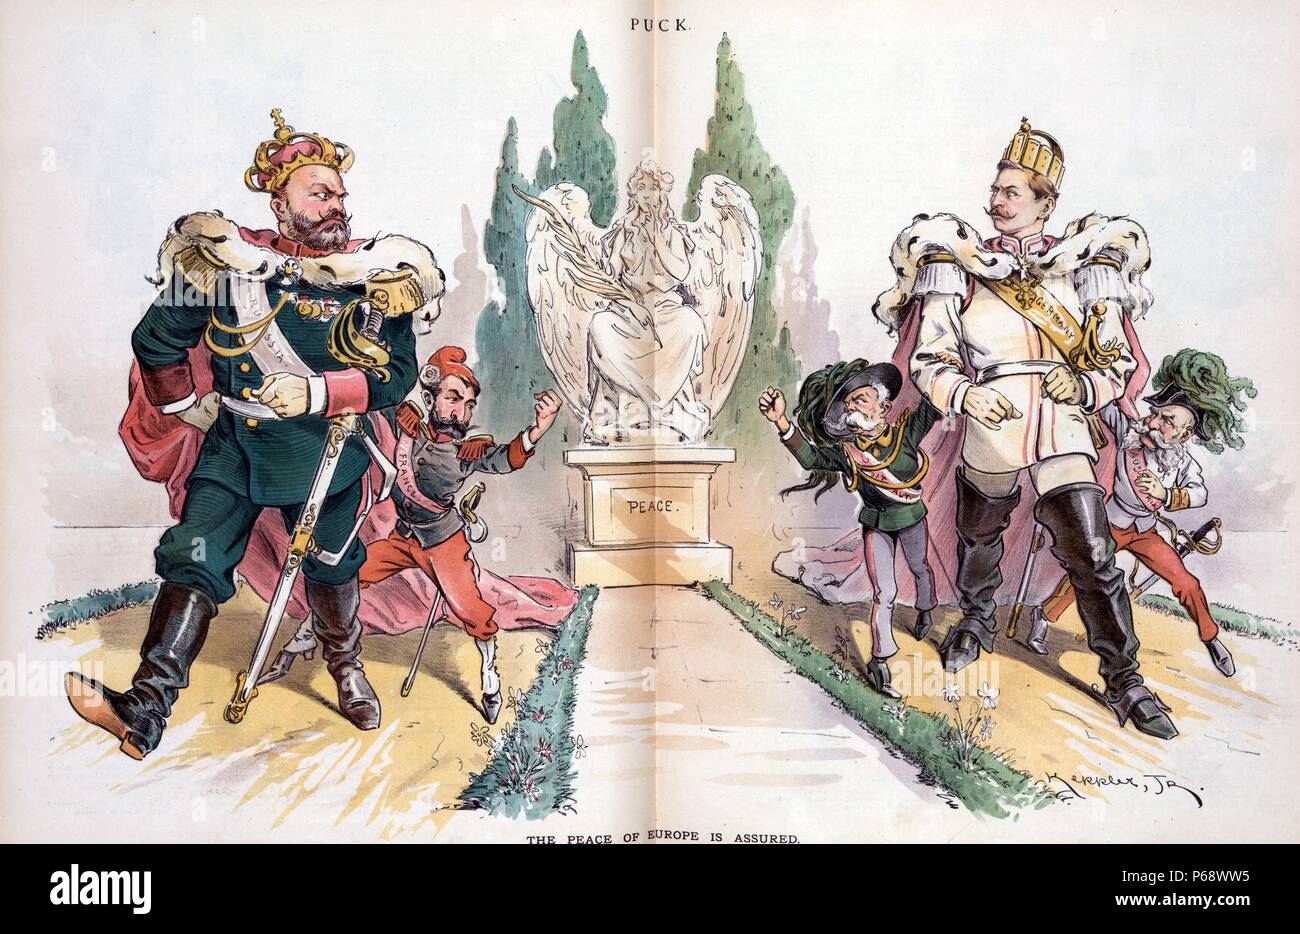 Der Frieden in Europa gesichert ist. von Udo Keppler, 1872-1956, Künstler. Veröffentlicht 1893. Alexander III., mit der Bezeichnung 'Russland', Wilhelm II., mit der Aufschrift "Deutschland", der die Blendung zurück, da sie an einem Weg weg von einer Statue von 'Frieden', Alexander III. wird begleitet von Sadi Carnot mit der Bezeichnung "Frankreich", schüttelte seine Faust ist bei Umberto I, mit der Aufschrift "Italien", die wiederum schüttelt seine Faust, Franz Joseph I., Aufschrift "Österreich", begleitet vom Wilhelm II. Stockfoto